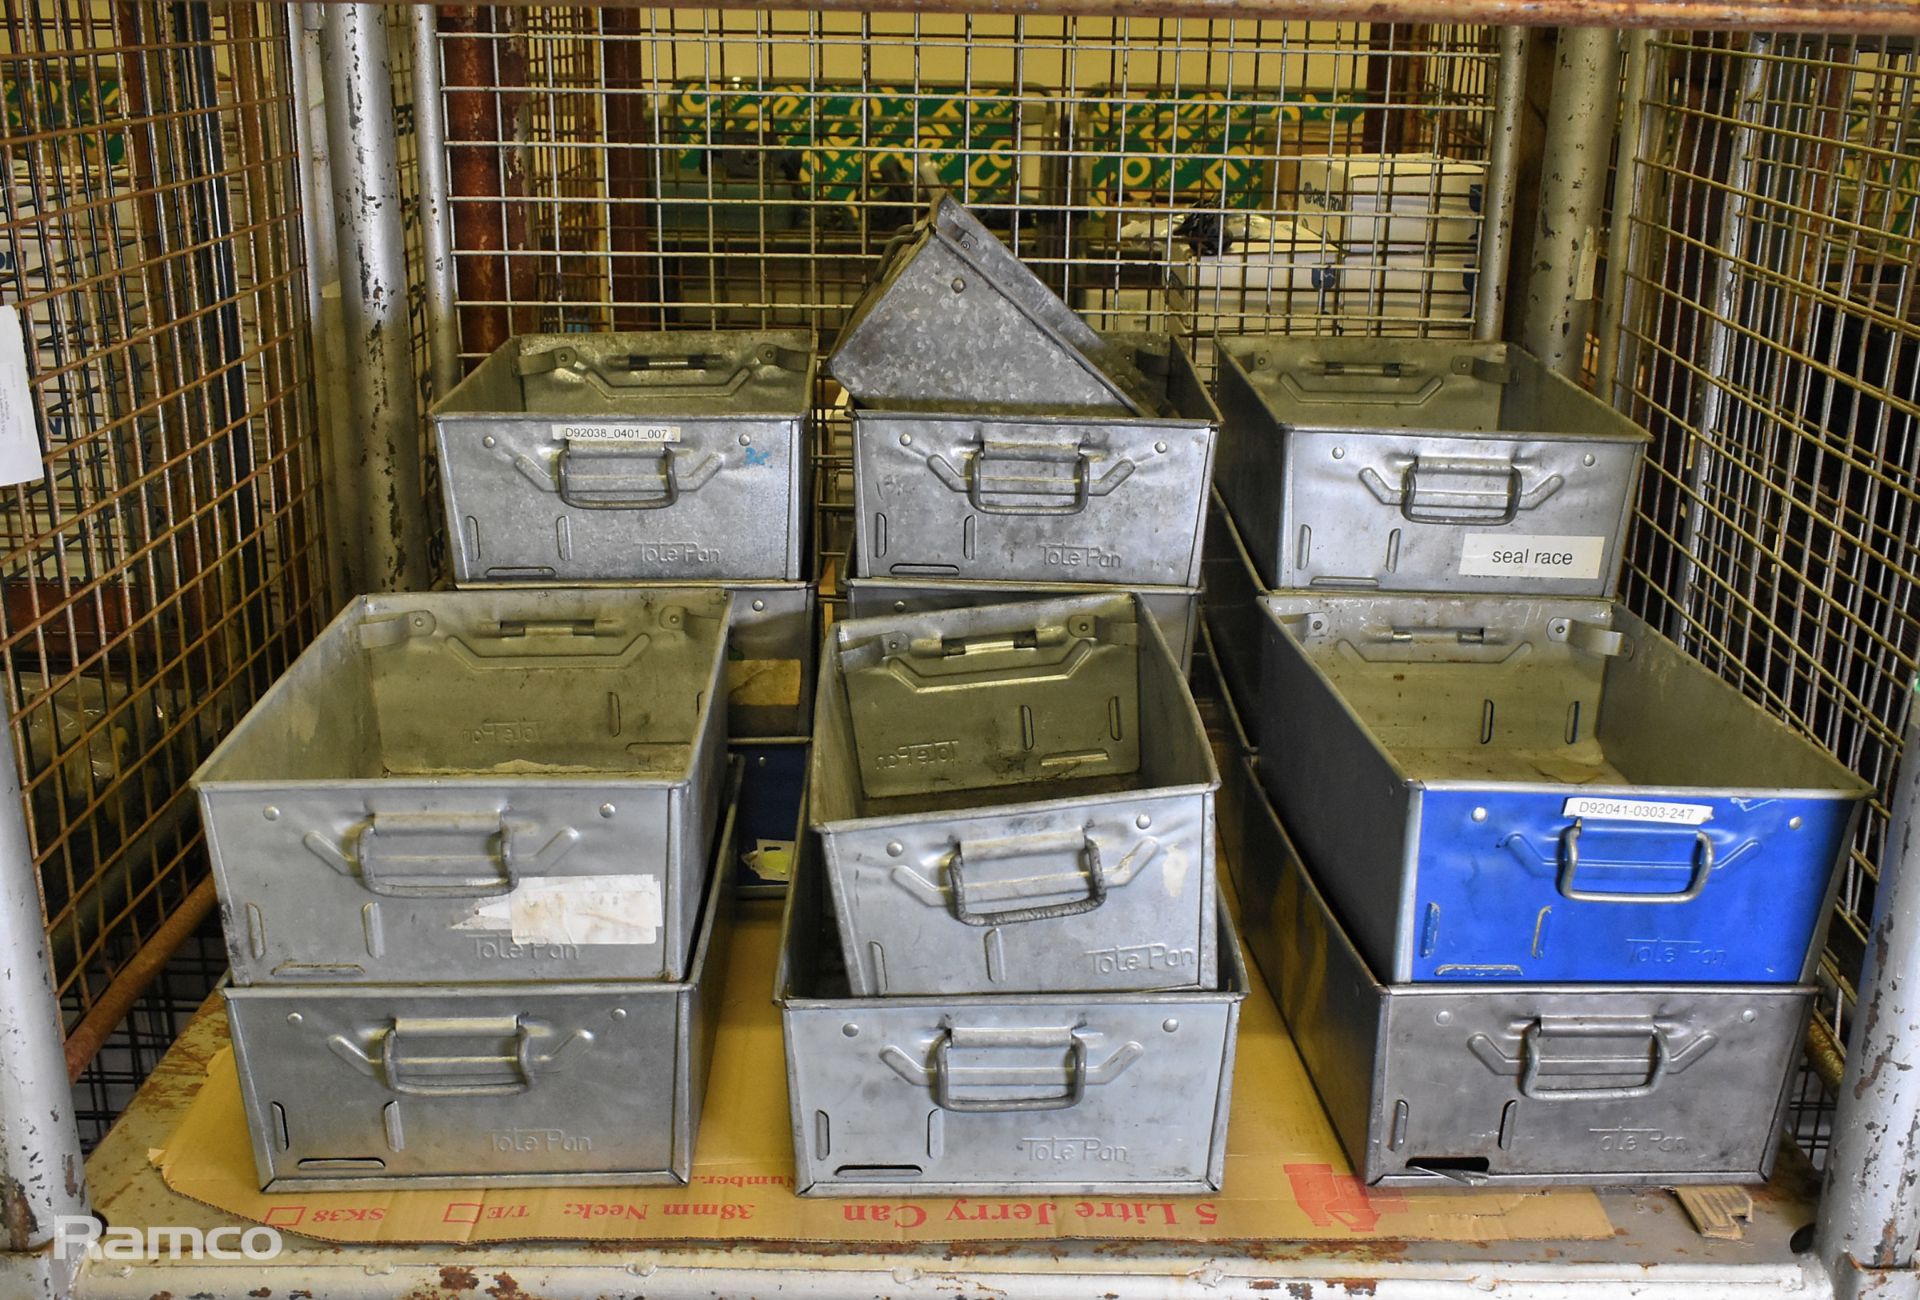 16x engineers tote pan storage bins